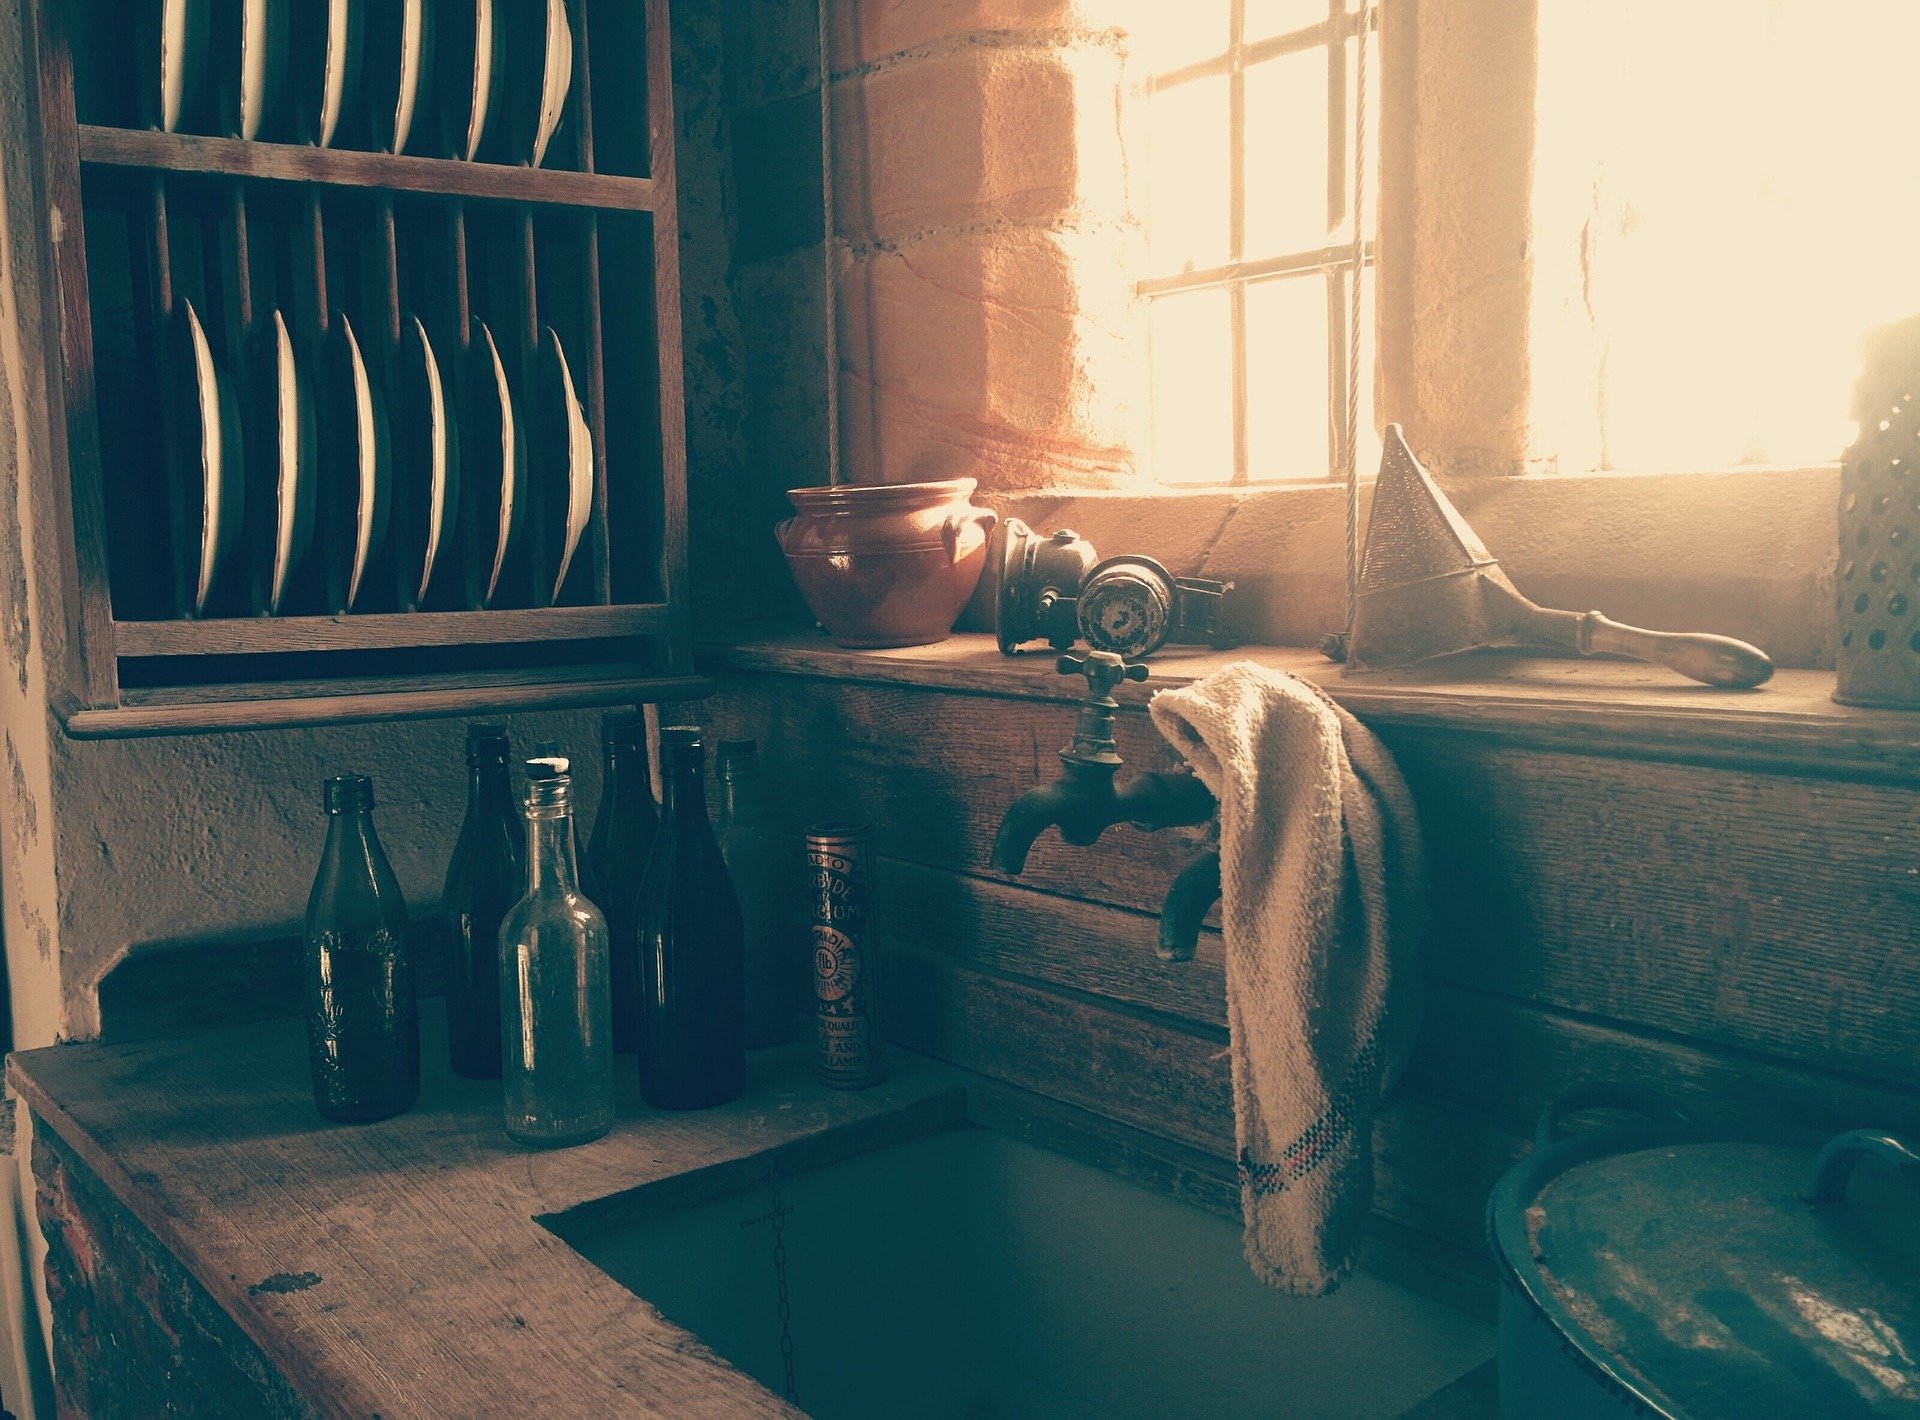 Trapo de cocina en lavaplatos. Fuente: Pixabay